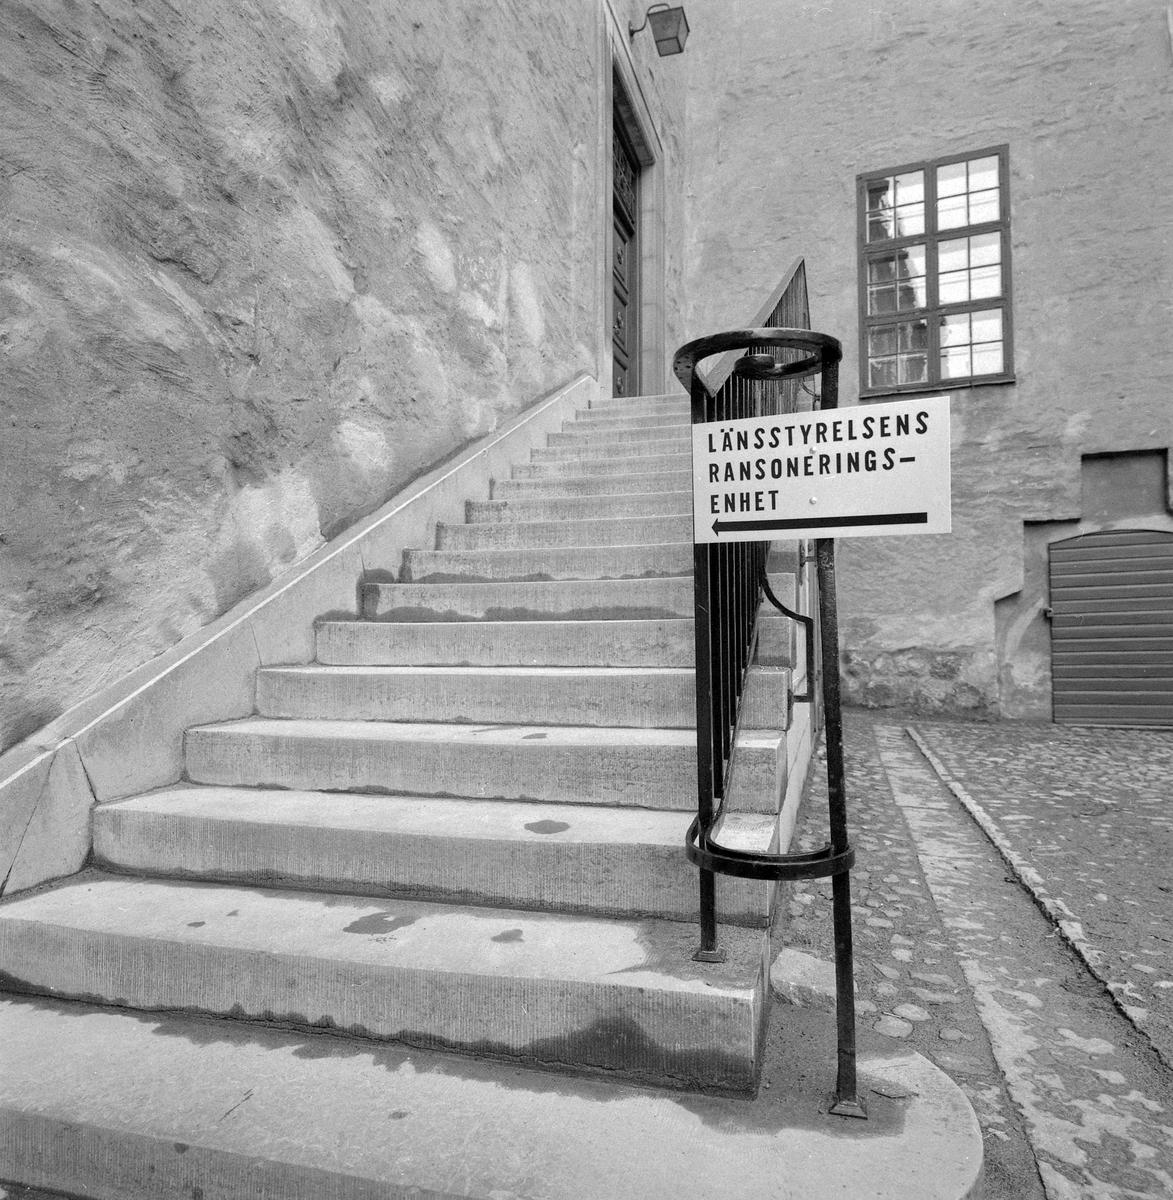 Senast det var aktuellt var Ransoneringsnämnden för Östergötlands län inrymd i Linköpings slott. Just detta år, 1974, kunde man lyckligtvis avveckla verksamheten efter att handeln med el och bensin åter blivit fri.